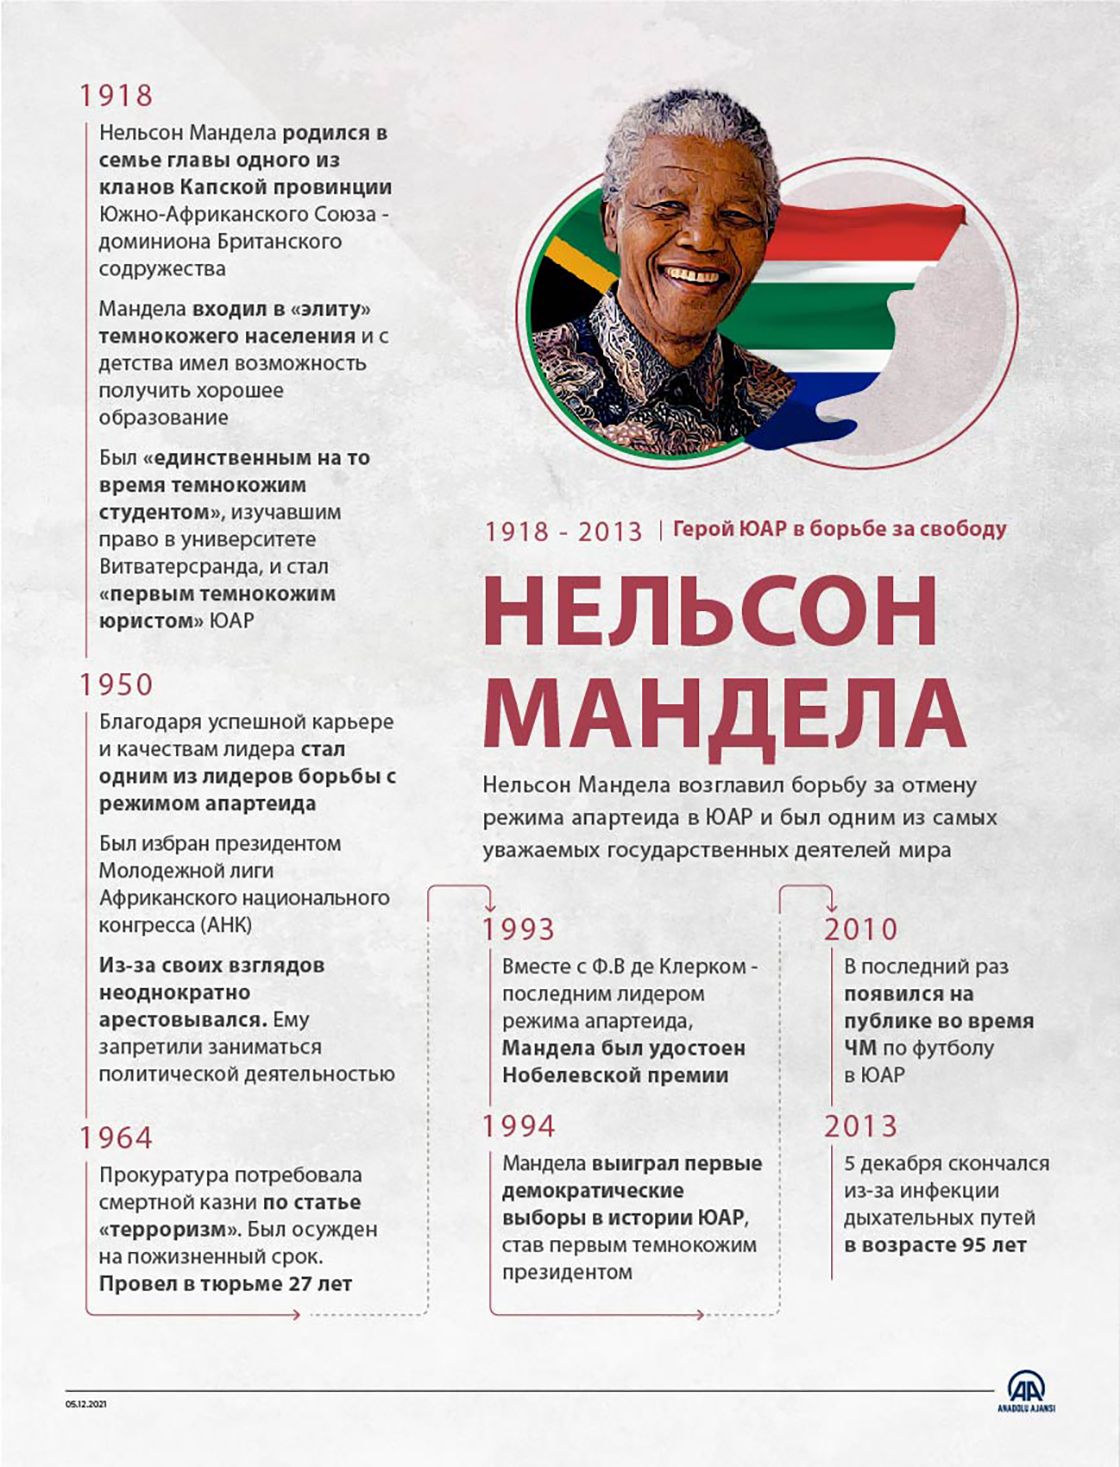 Герой ЮАР в борьбе за свободу - Нельсон Мандела 